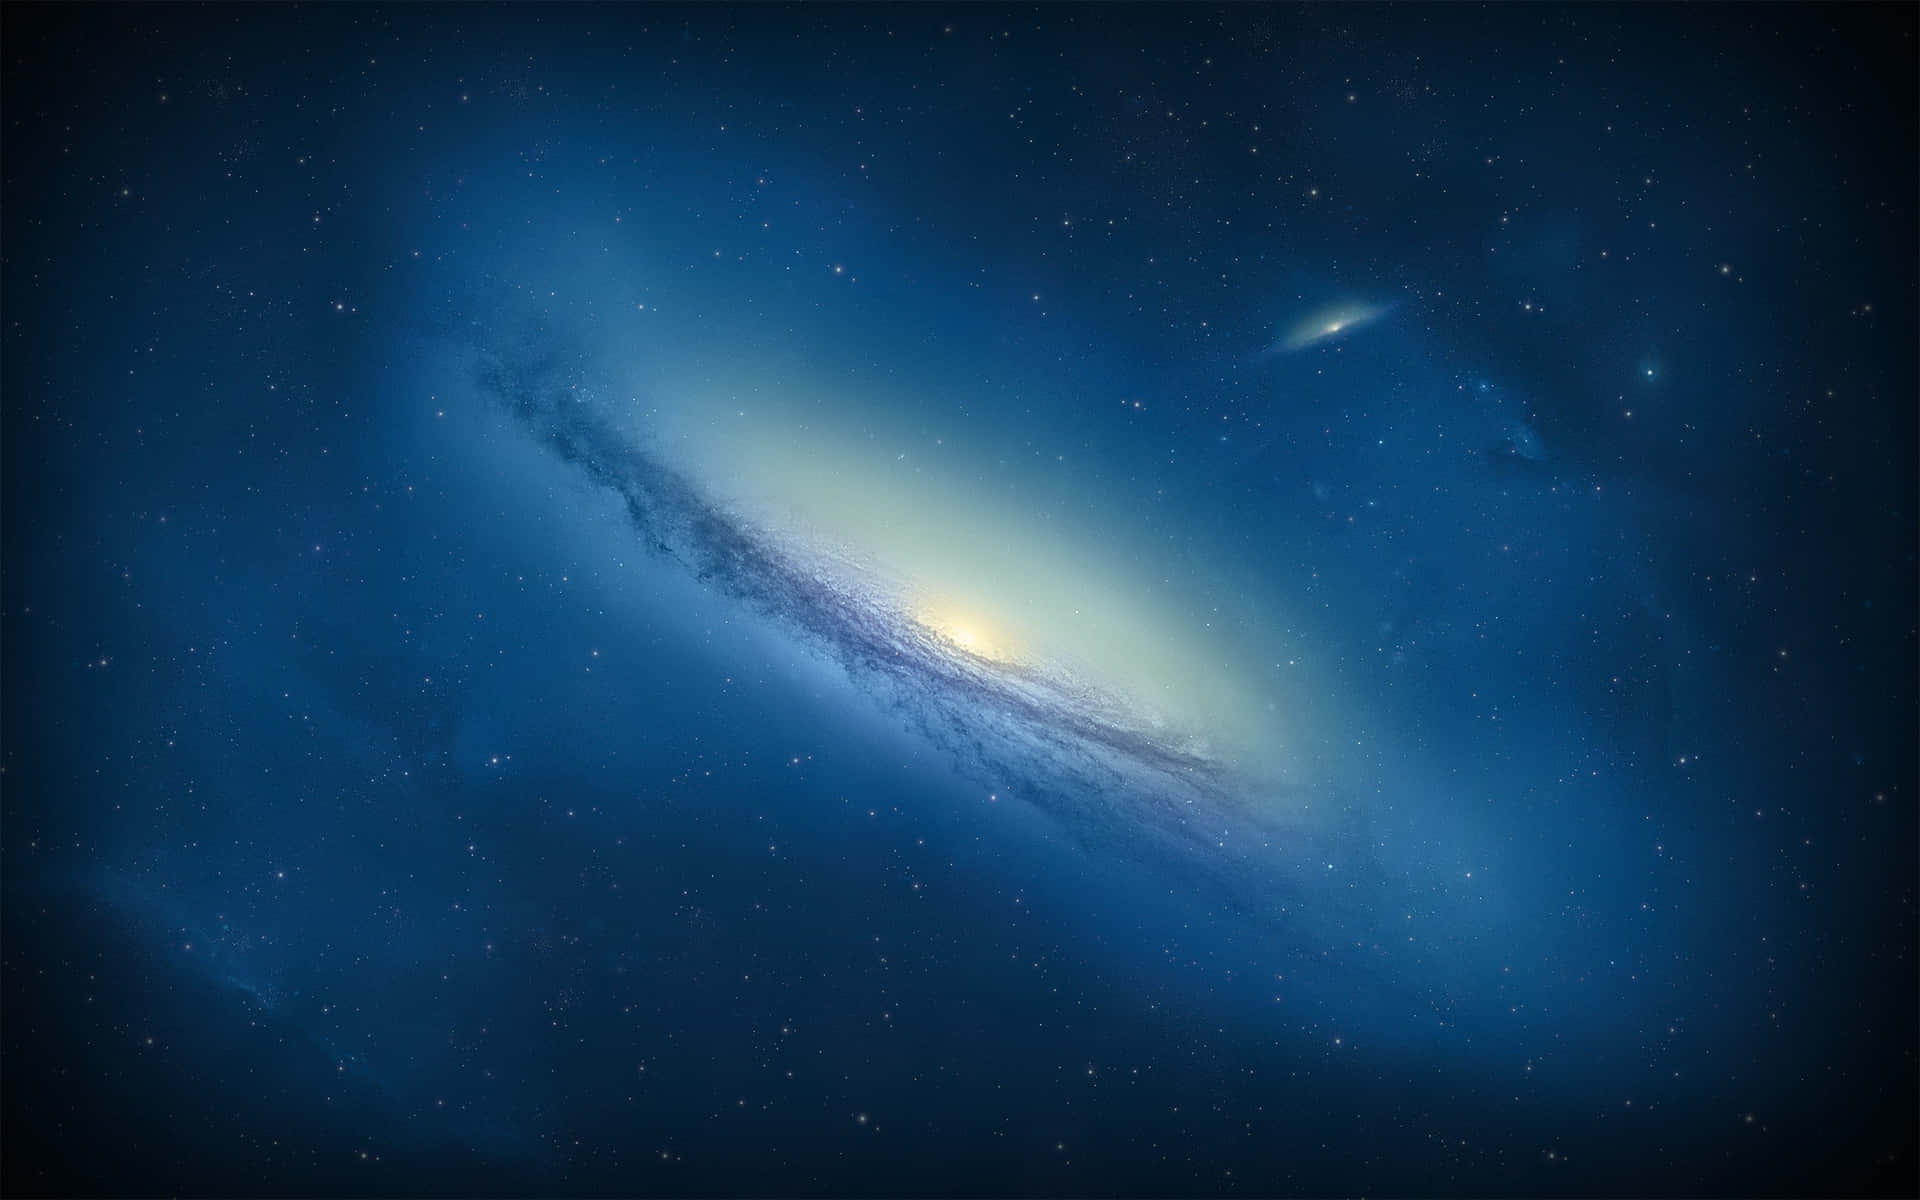 Vistada Galáxia De Andrômeda Em Resolução 4k Papel de Parede